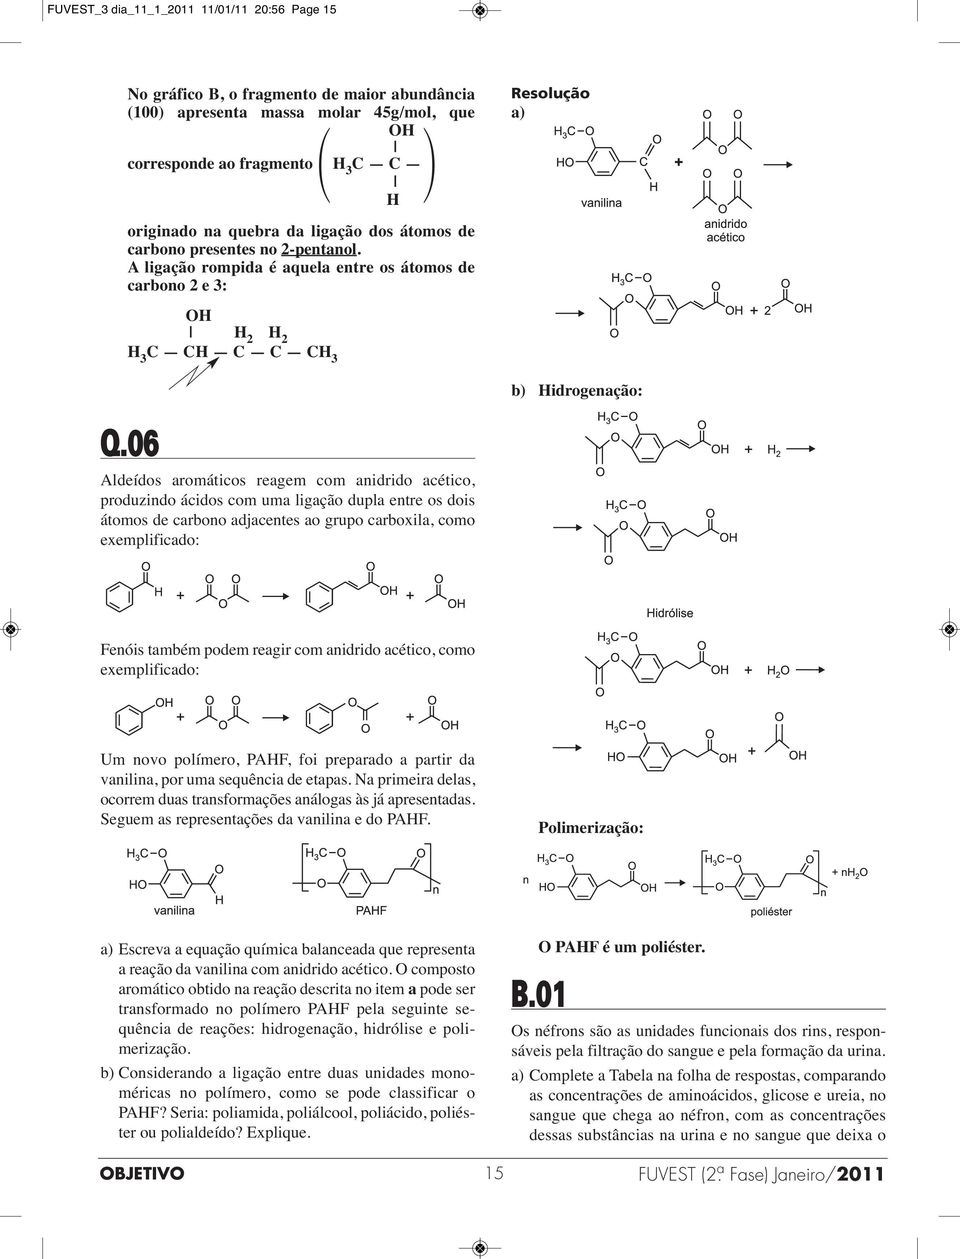 06 Aldeídos aromáticos reagem com anidrido acético, produzindo ácidos com uma ligação dupla entre os dois átomos de carbono adjacentes ao grupo carboxila, como exemplificado: Fenóis também podem